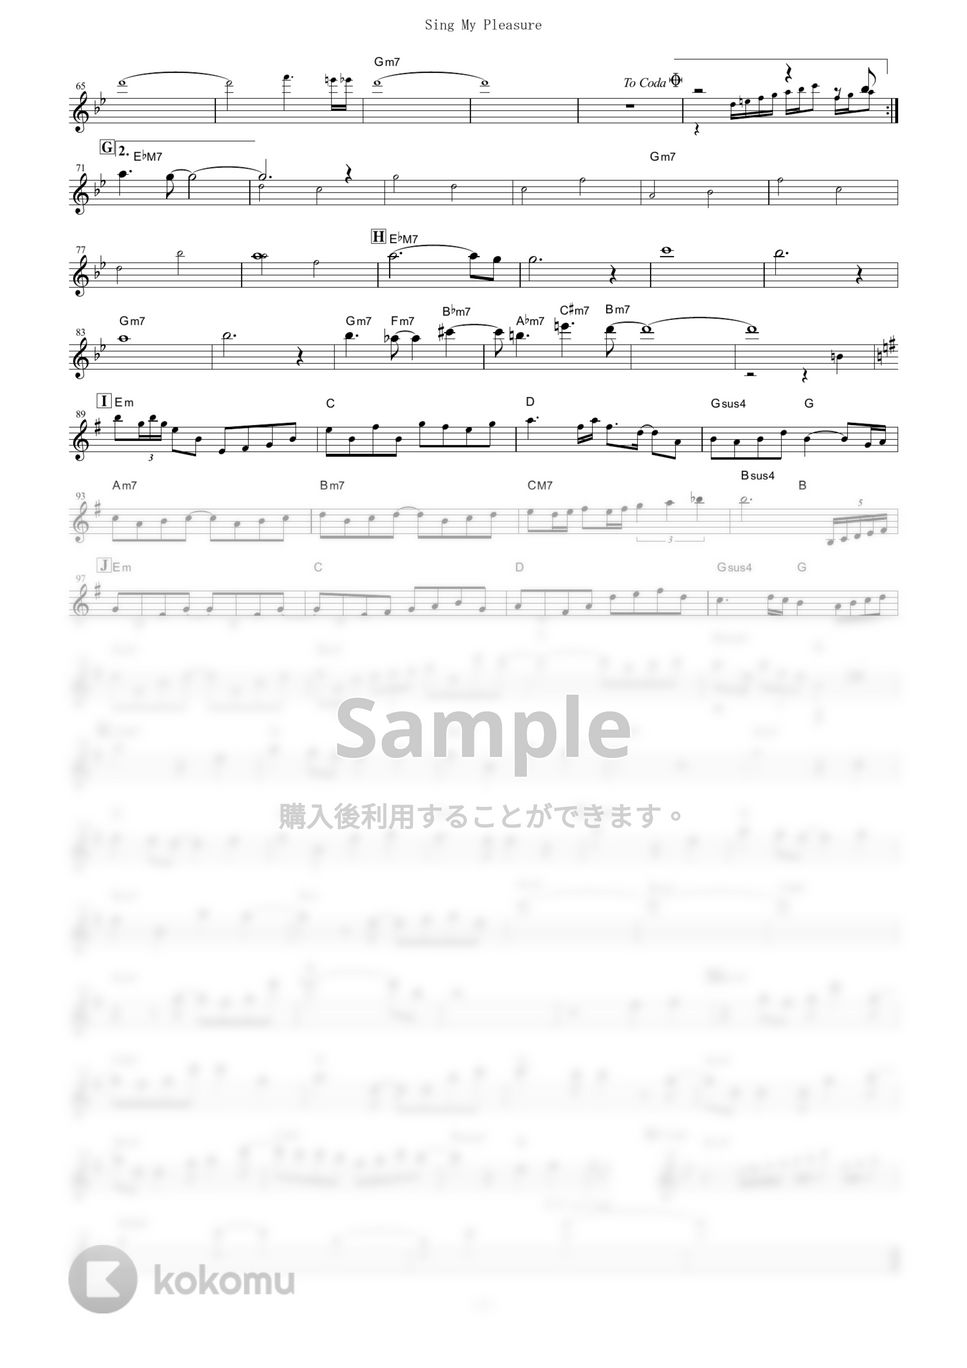 ヴィヴィ（八木海莉） - Sing My Pleasure (『Vivy -Fluorite Eye's Song-』 / in Bb) by muta-sax